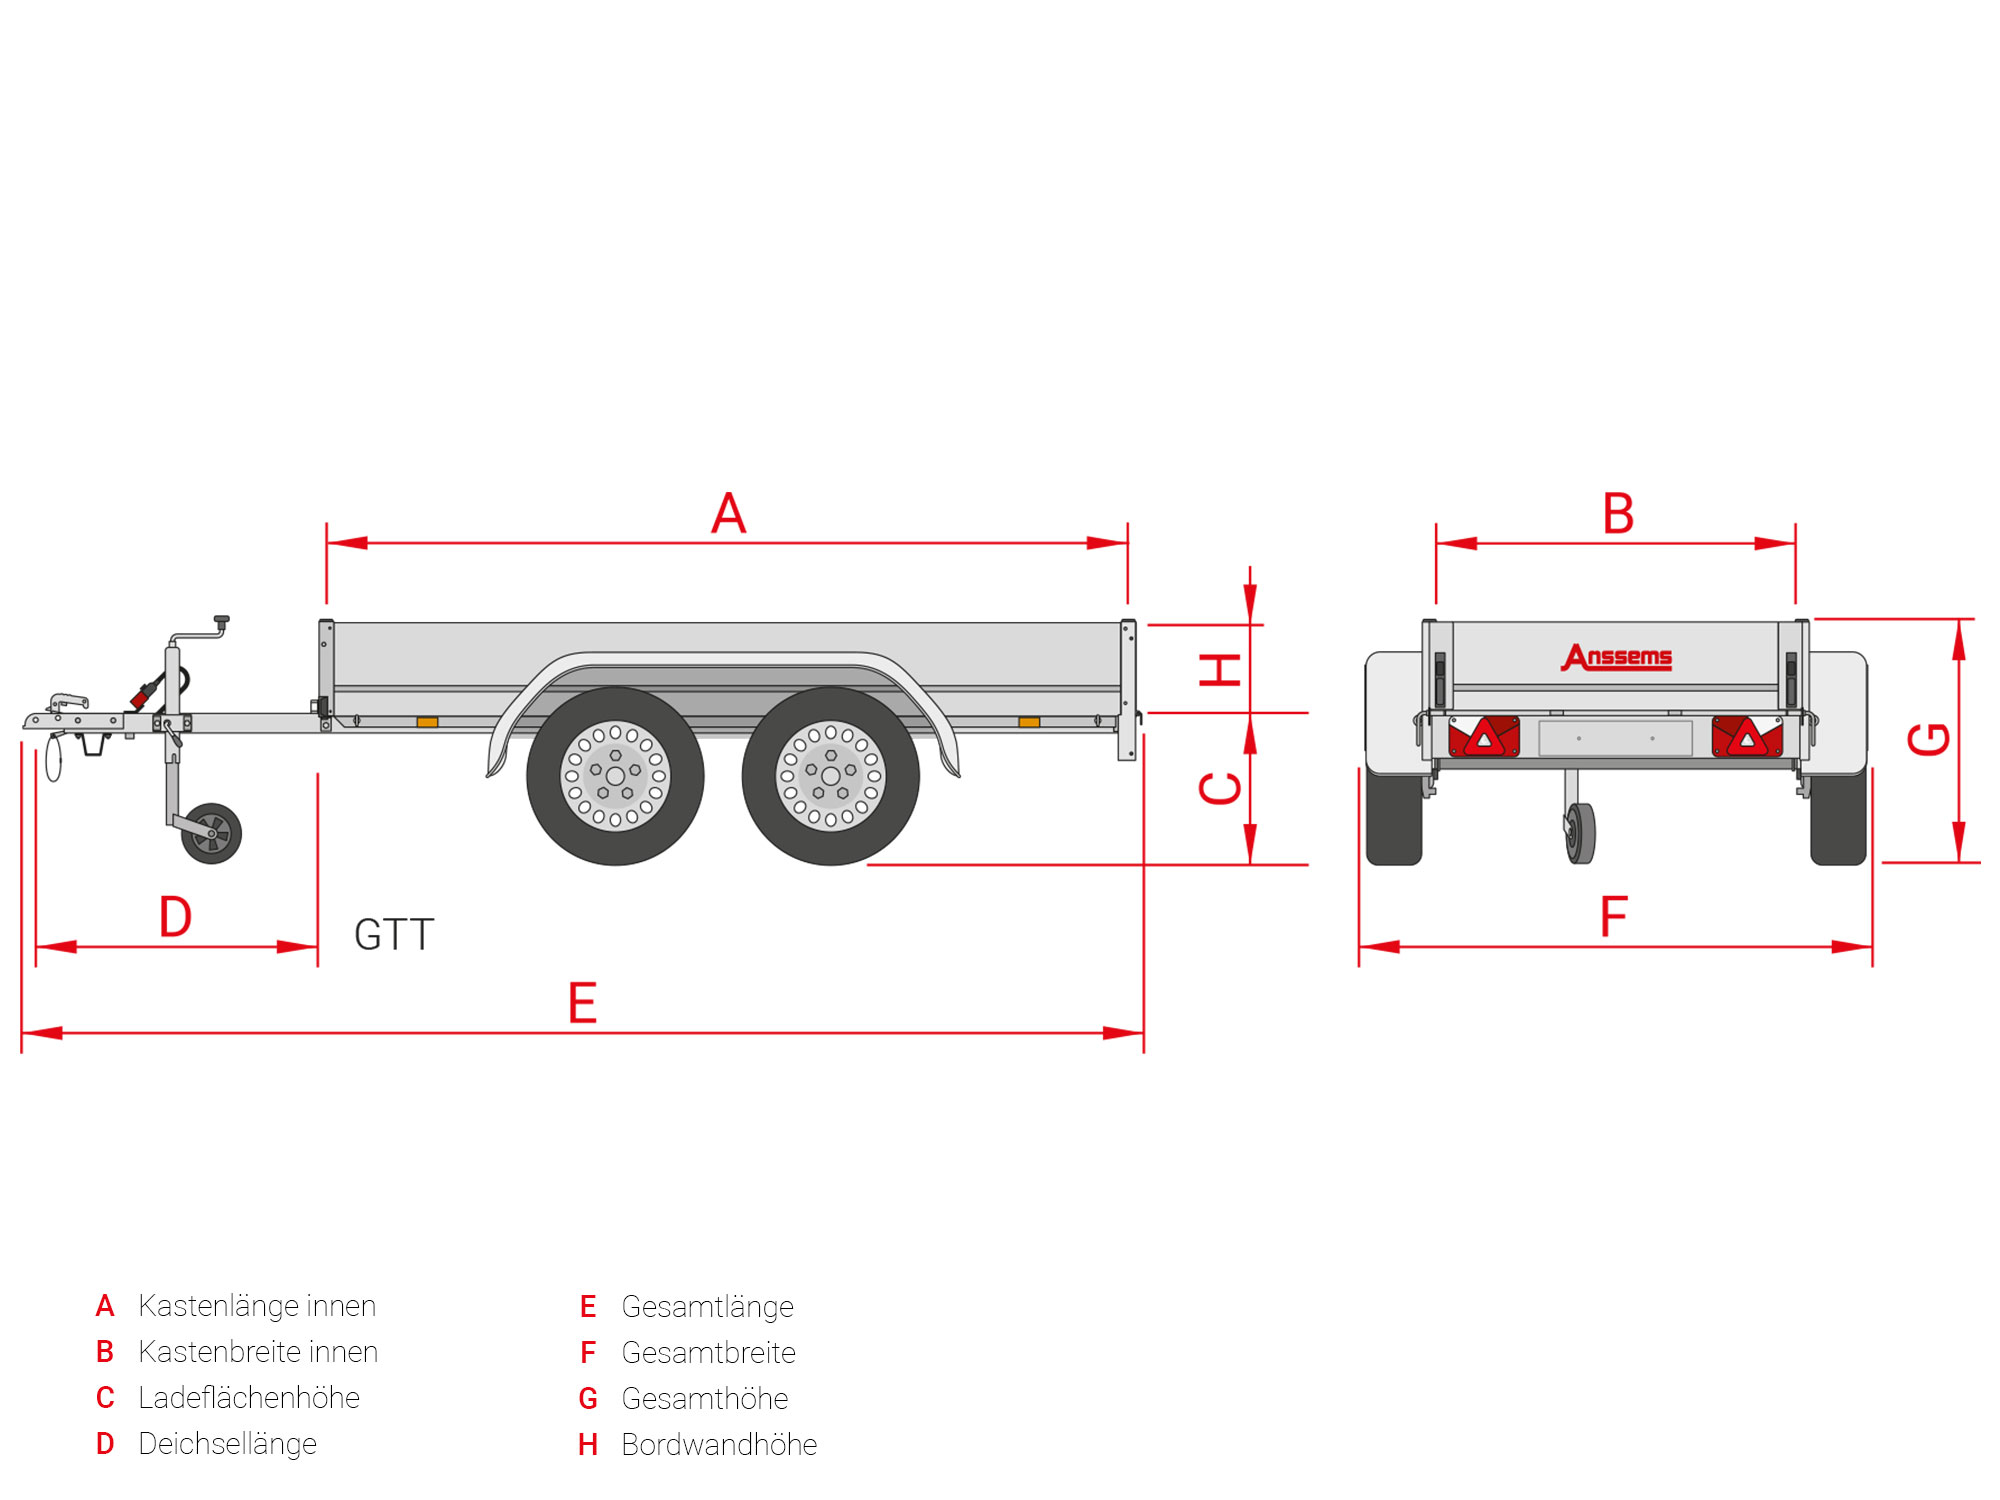 Anssems PKW Anhänger Tieflader Alu 750 kg, Ladefläche 2,51 x 1,26 m  ungebremst